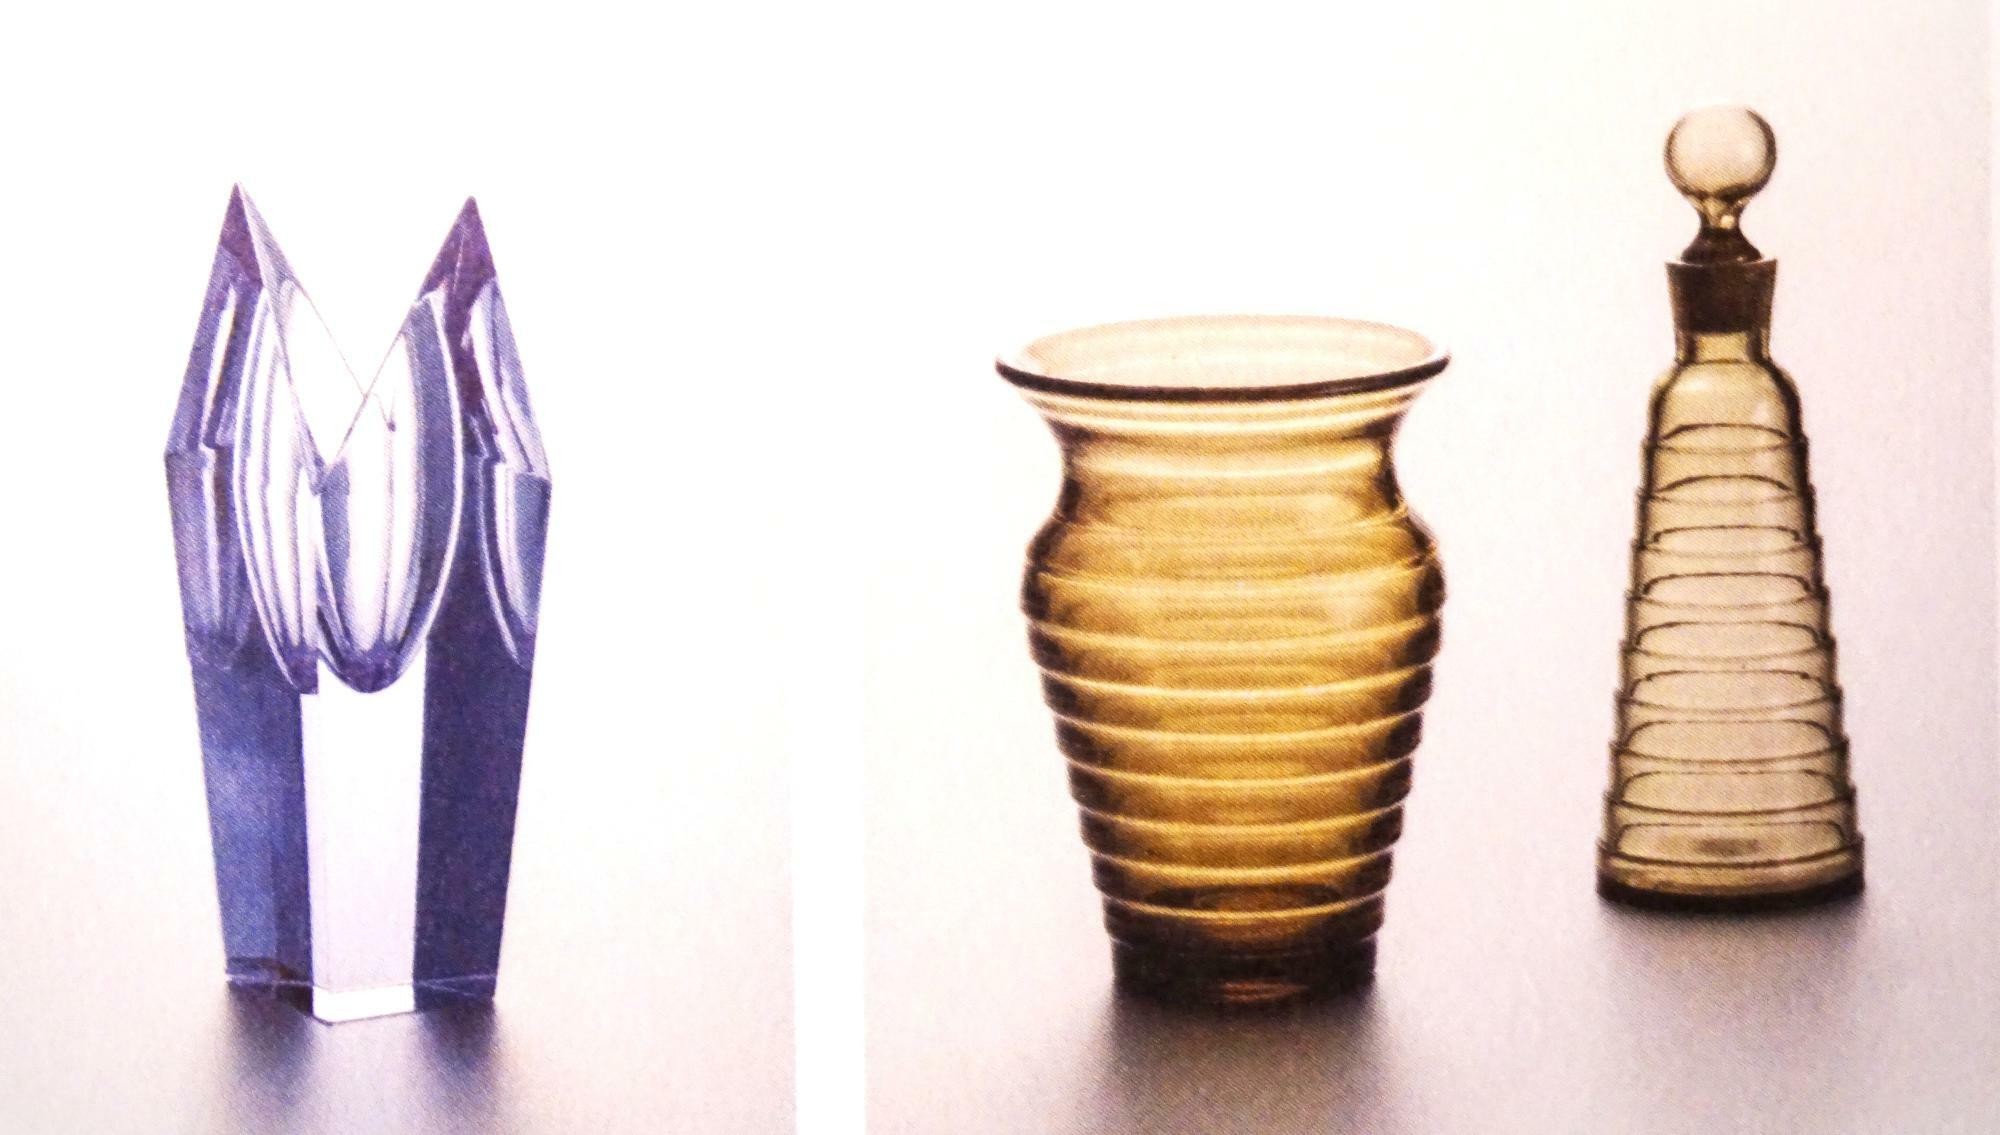 右：アイノ・アアルト「ボルゲブリック」花瓶、ボトル 1932年 カルフラガラス研究所　左：ナニー・スティル「氷山(プリズム）」1961年　リーヒマエンラシ社」共にコレクション・カッコネン蔵